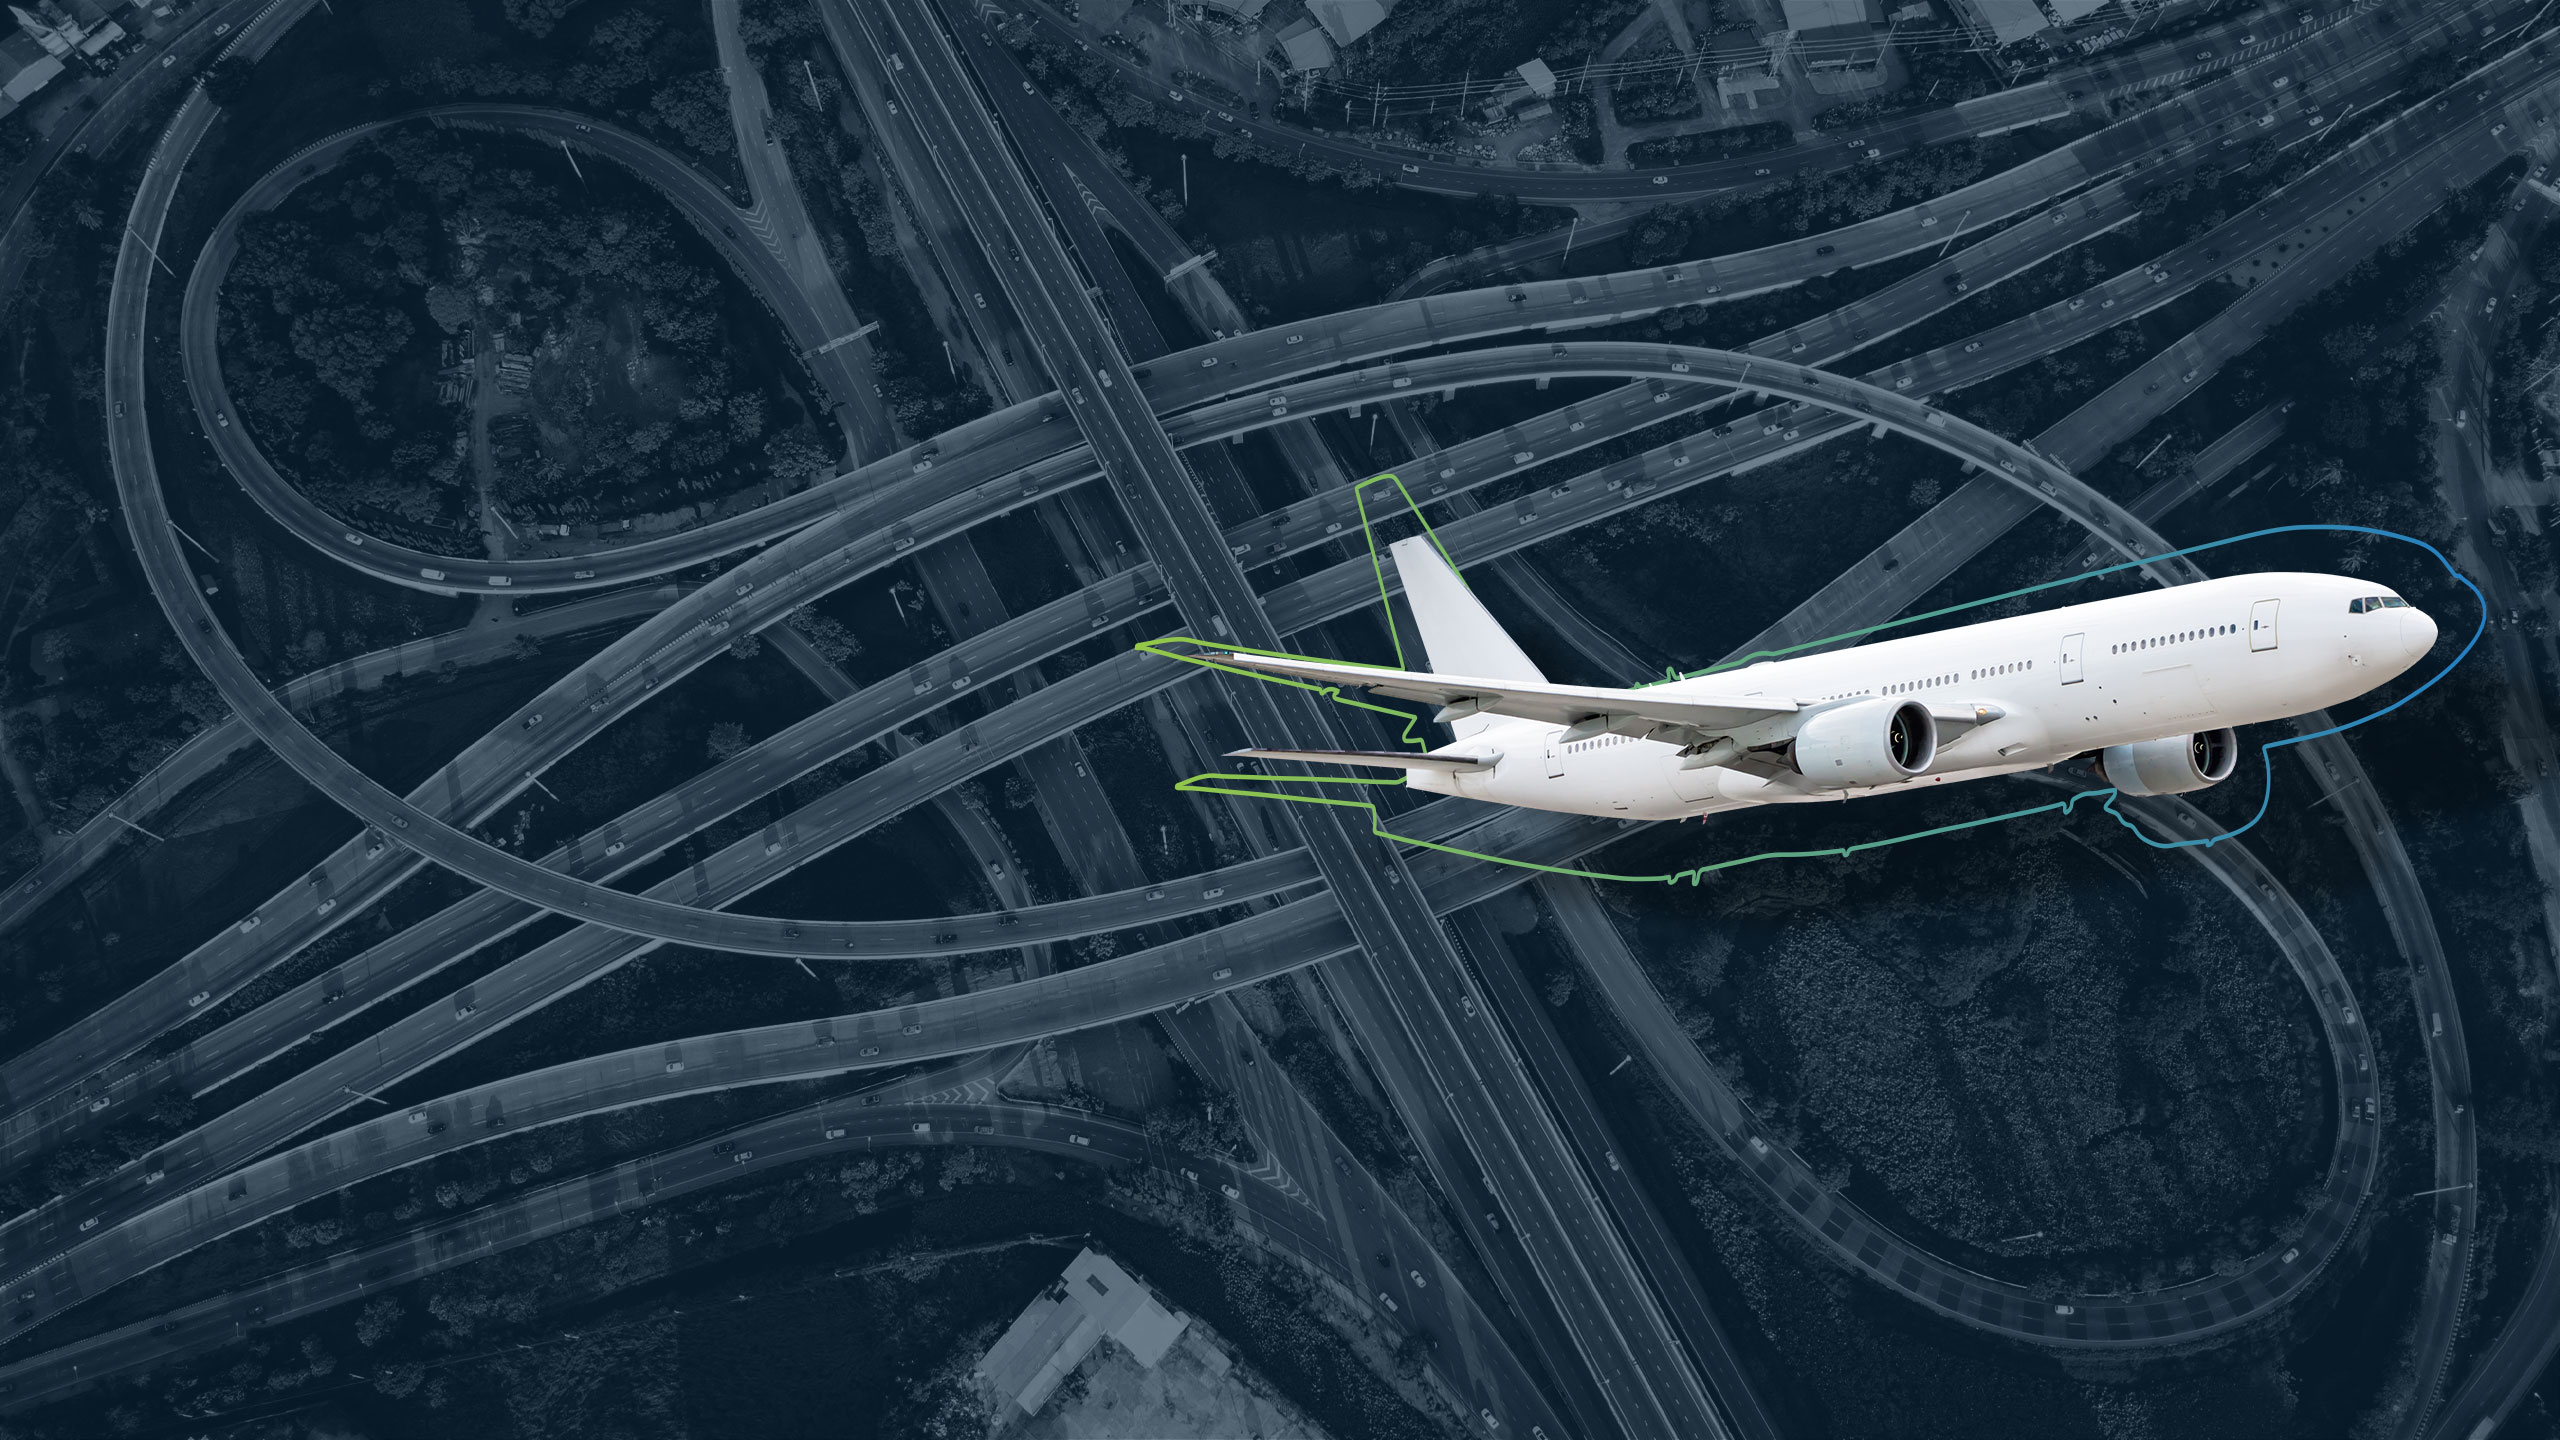 Headerbild zur Seite Network Design: zeigt Flugzeug im Vordergrund und Transportnetzwerk bzw. Straßenverkehr von oben im Hintergrund